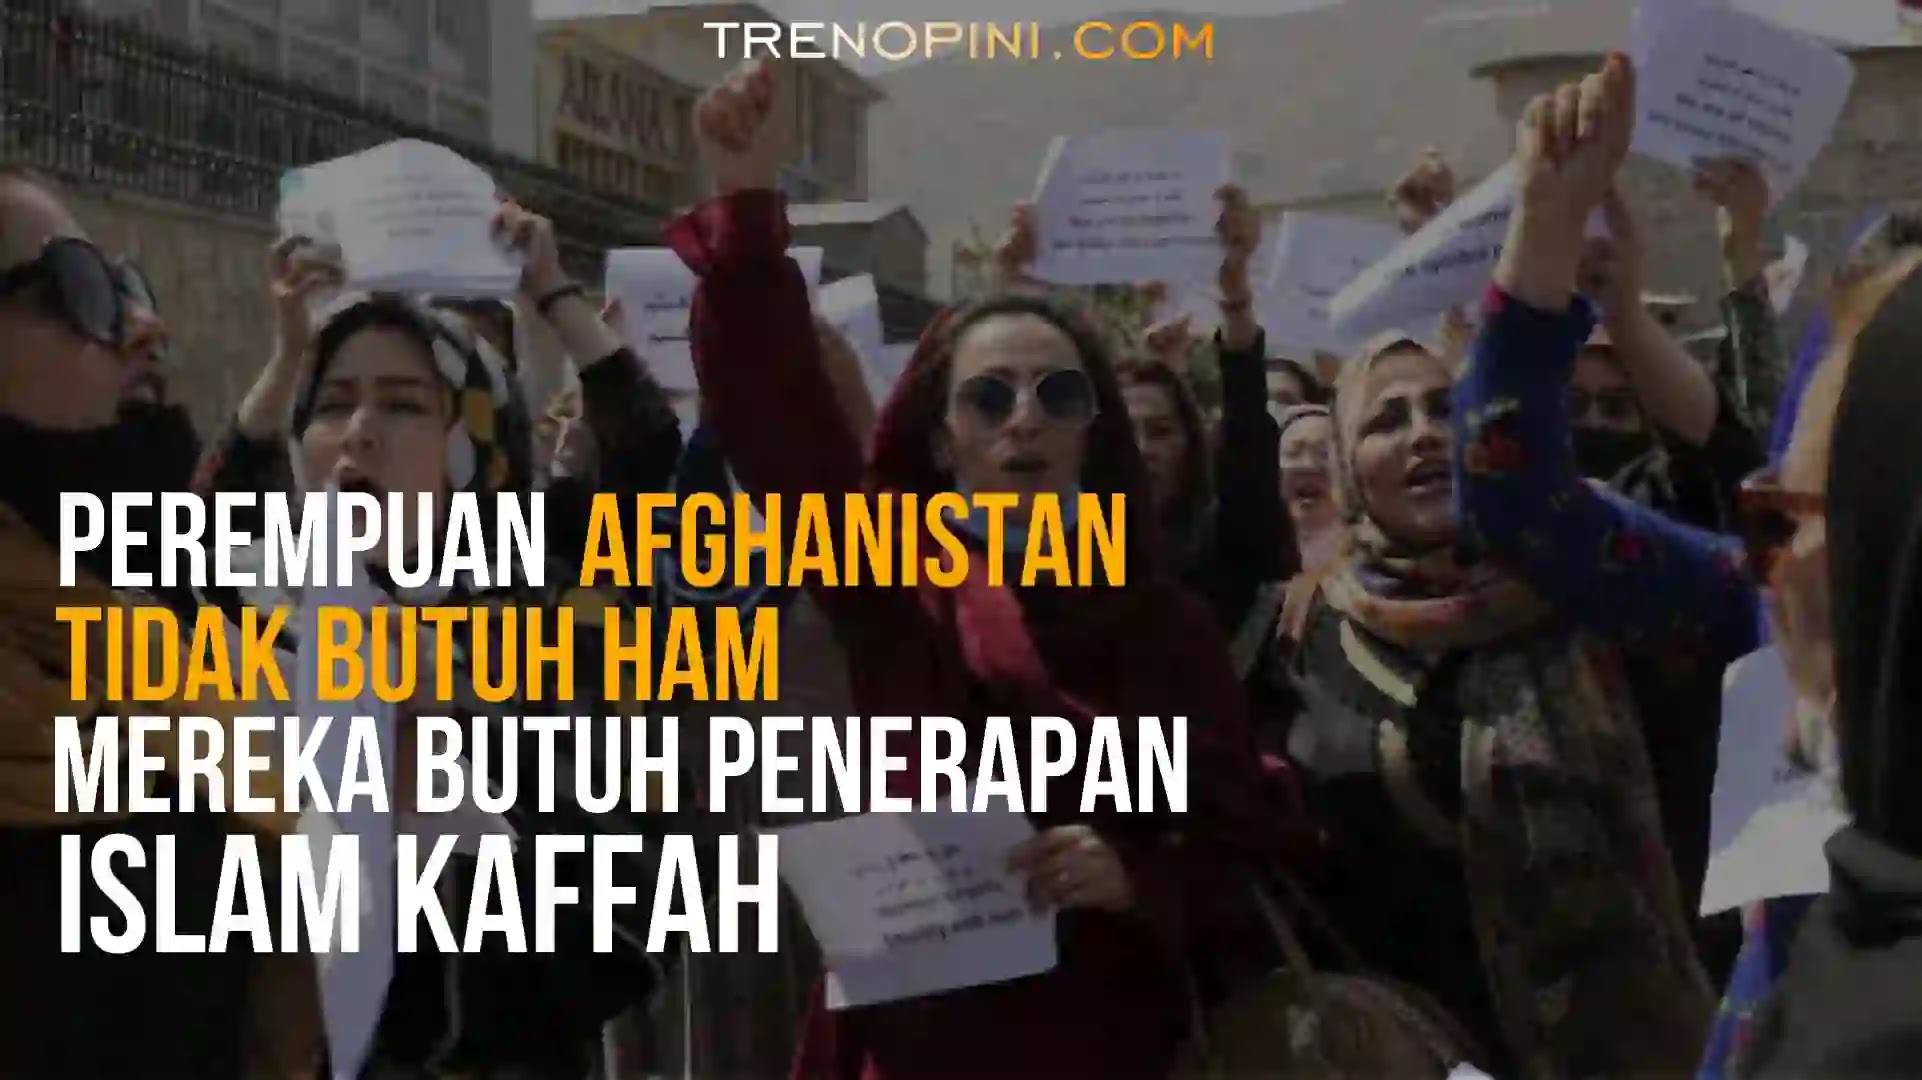 Puluhan perempuan Afghanistan kembali menggelar aksi unjuk rasa untuk menuntut hak atas pekerjaan dan pendidikan dari pemerintahan Taliban, Ahad (16/1/22). Dalam aksinya, mereka kerap meneriakkan slogan “kesetaraan dan keadilan” seraya membentangkan spanduk bertuliskan “hak-hak perempuan dan hak asasi manusia”.